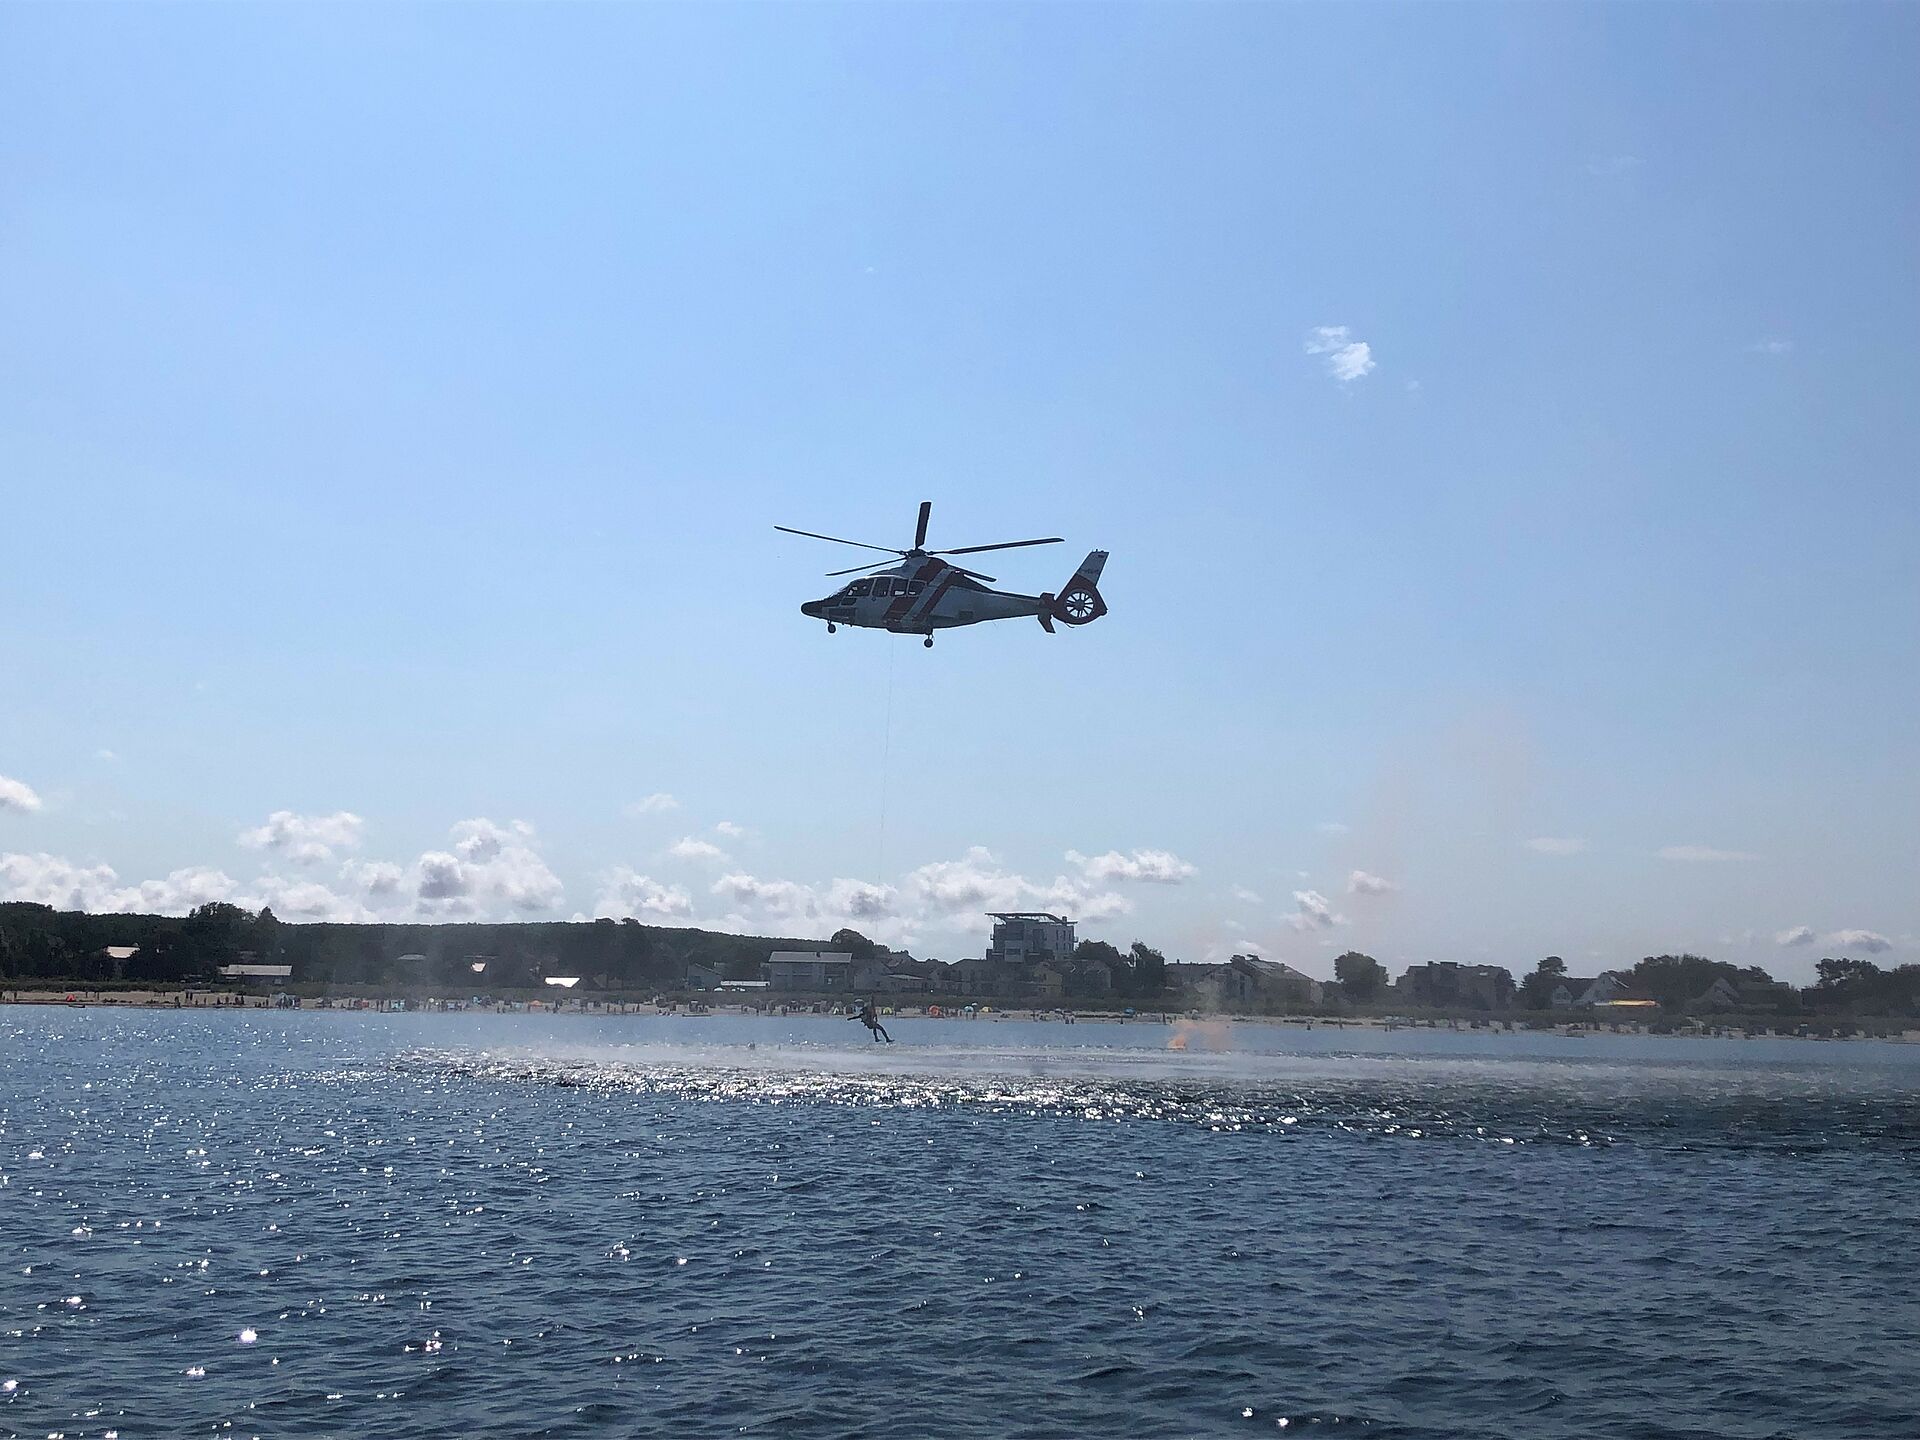 Hubschrauber steht über dem Wasser und an einem Seil hängt ein Mensch